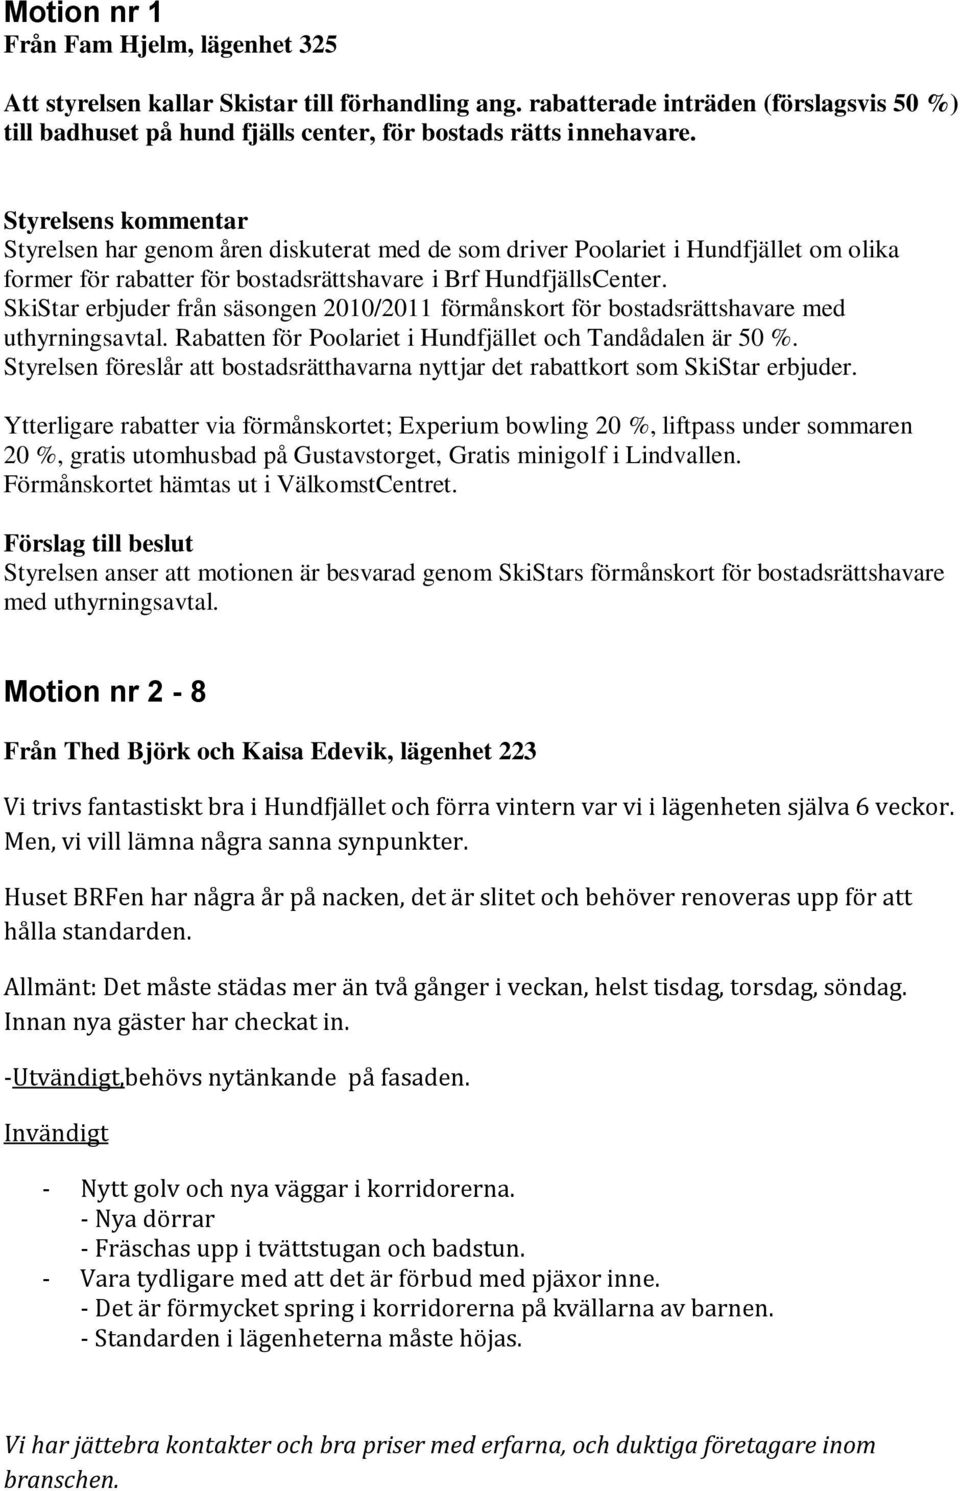 SkiStar erbjuder från säsongen 2010/2011 förmånskort för bostadsrättshavare med uthyrningsavtal. Rabatten för Poolariet i Hundfjället och Tandådalen är 50 %.